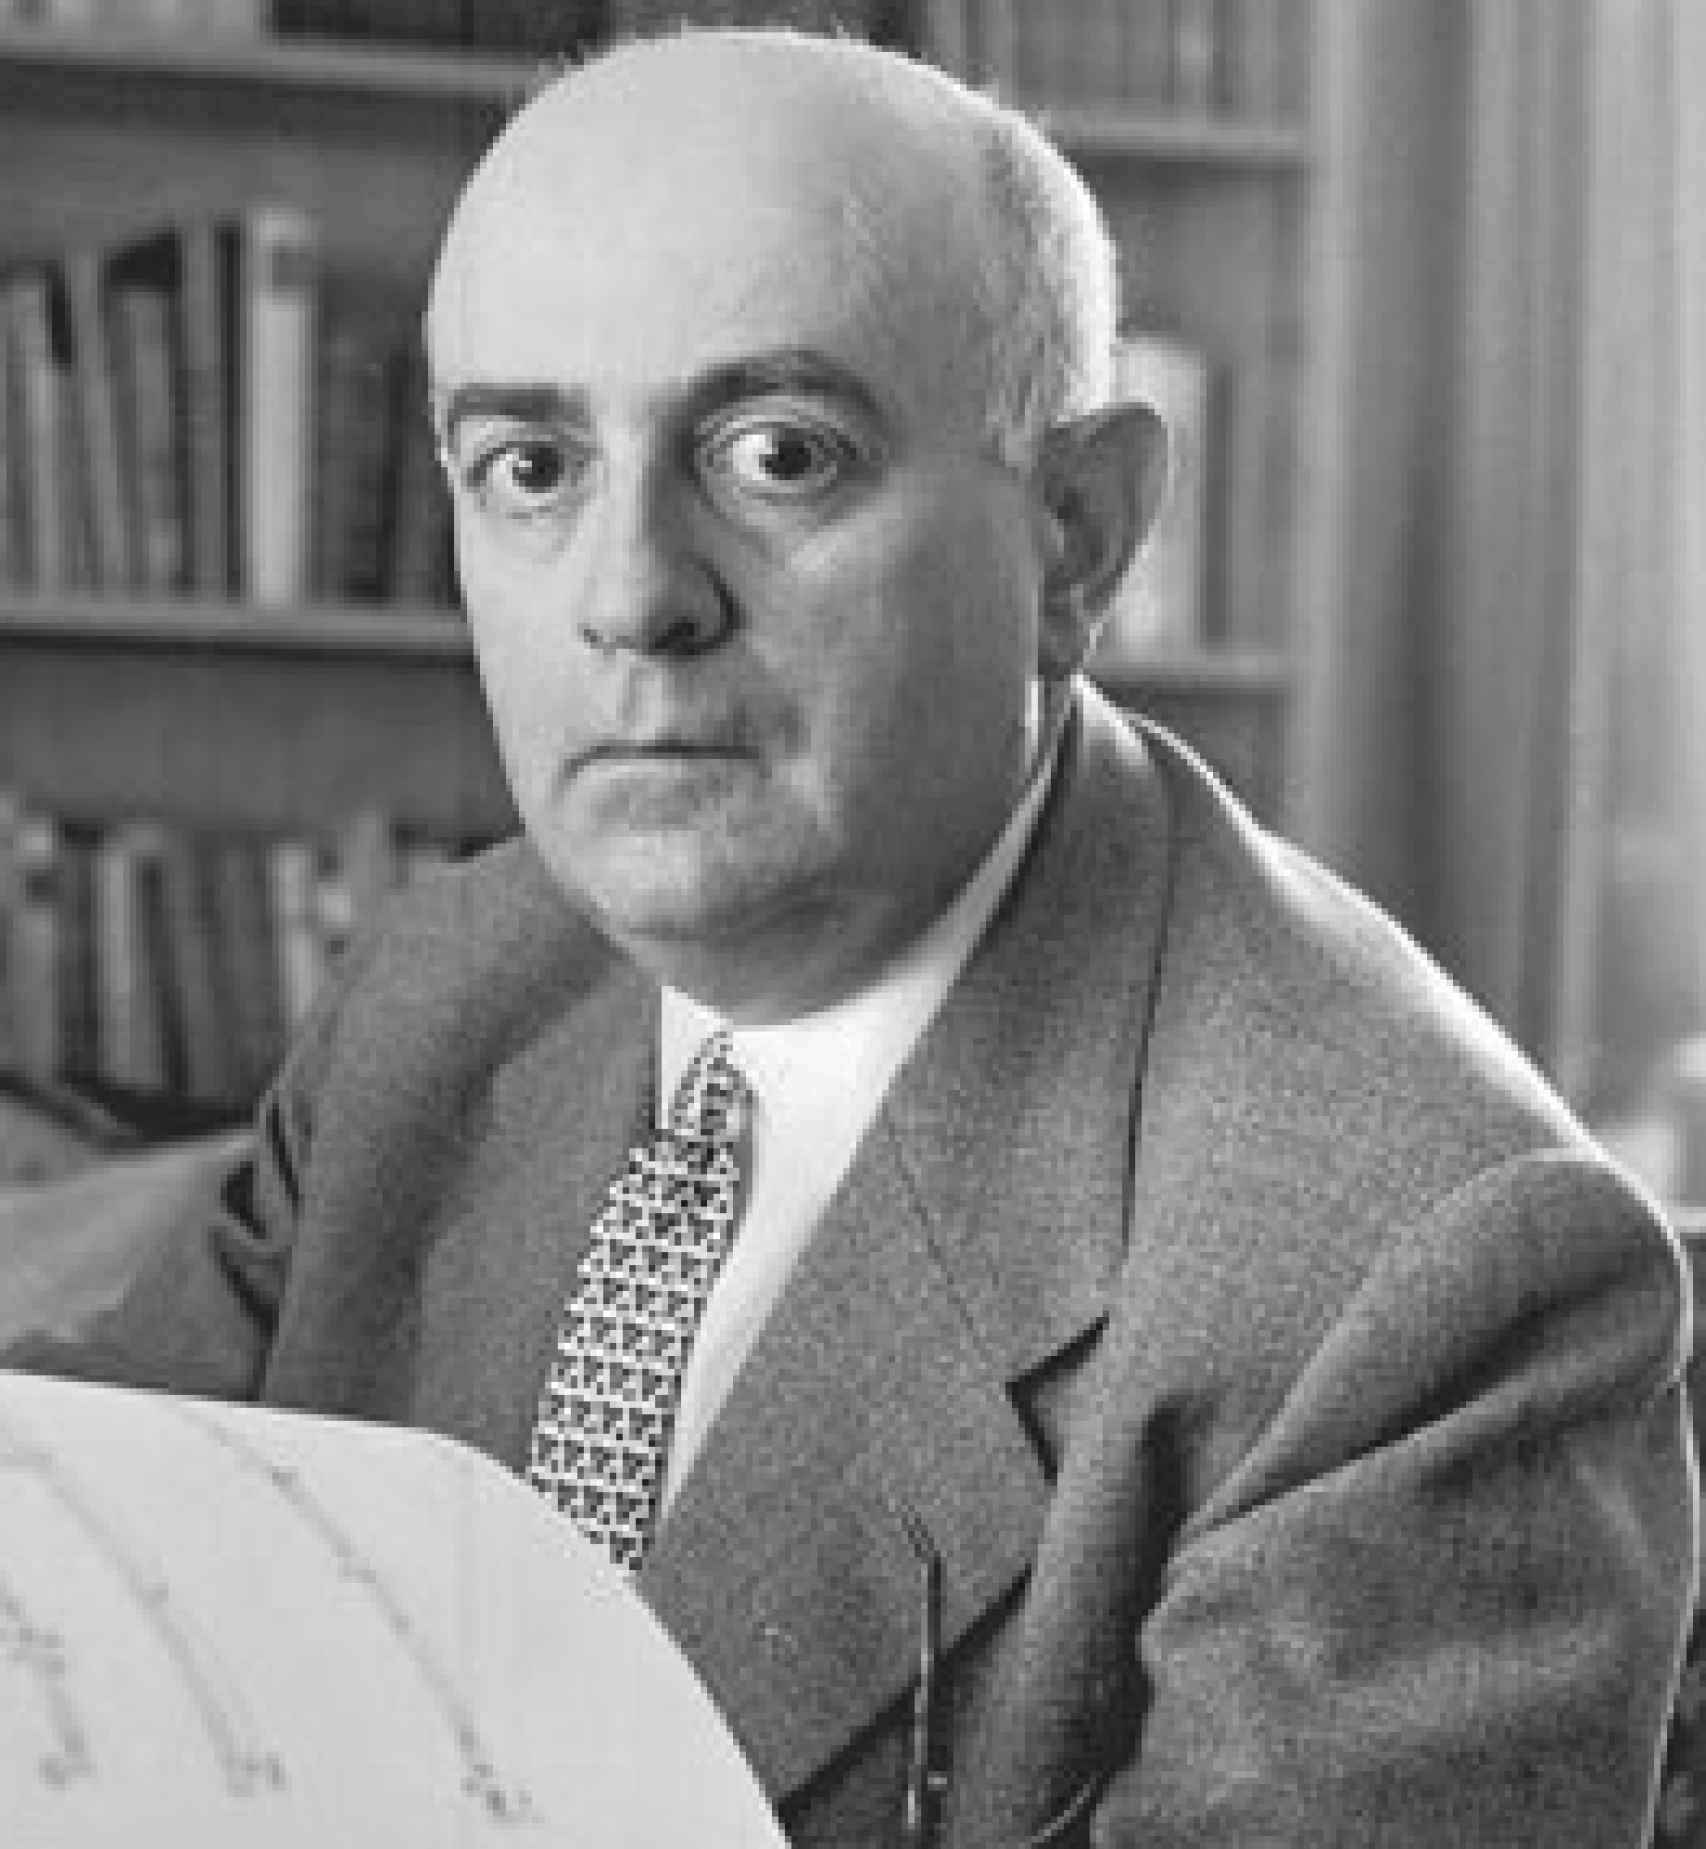 Theodor Adorno